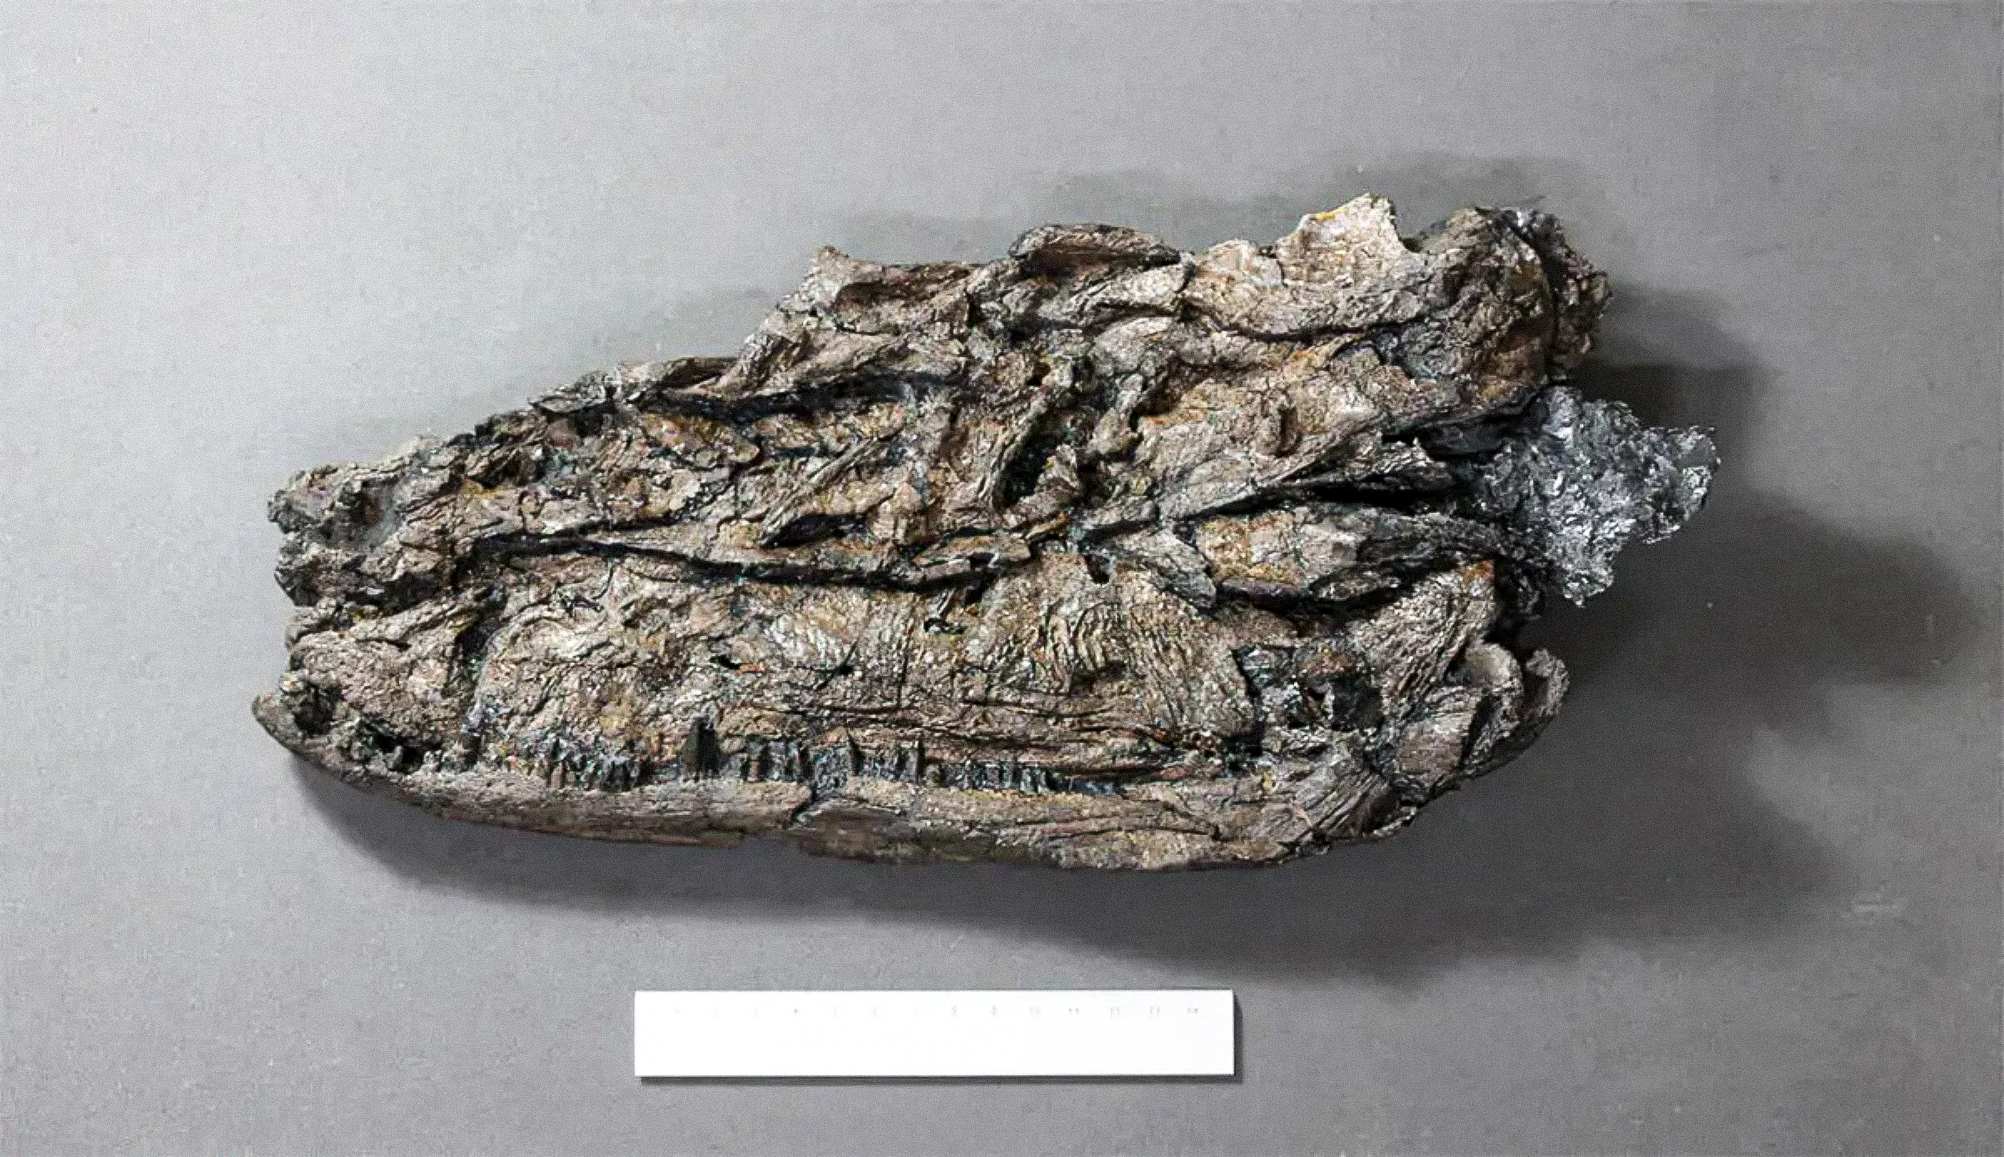 Le processus de fossilisation a provoqué la compression de spécimens de Crassigyrinus.